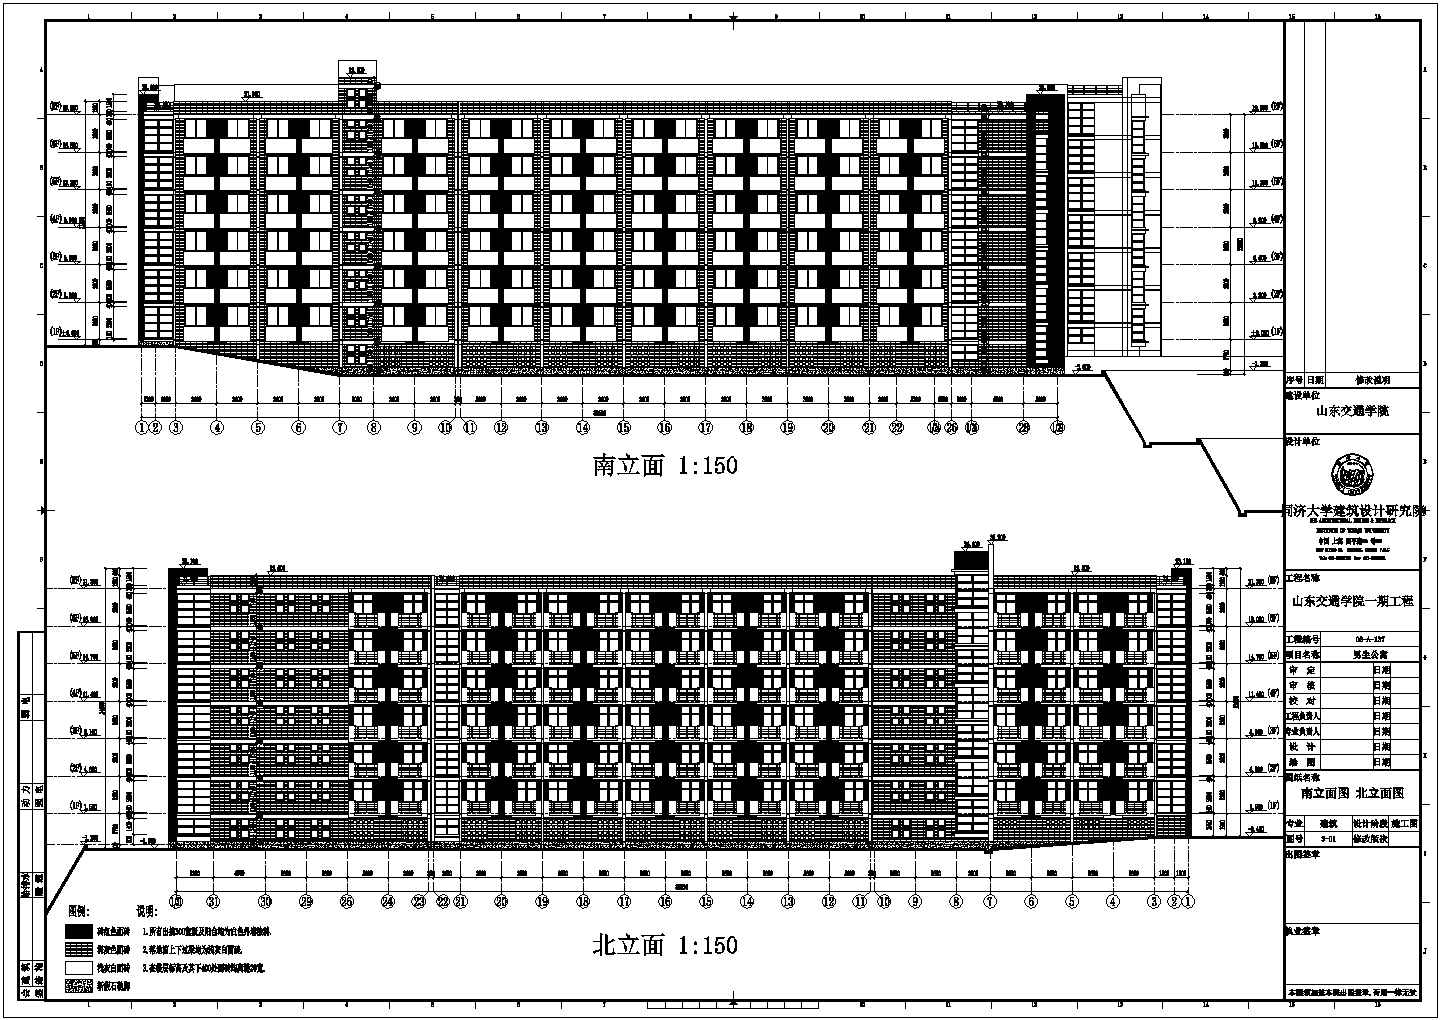 【山东】某交通学院男生宿舍建筑结构水暖电施工图